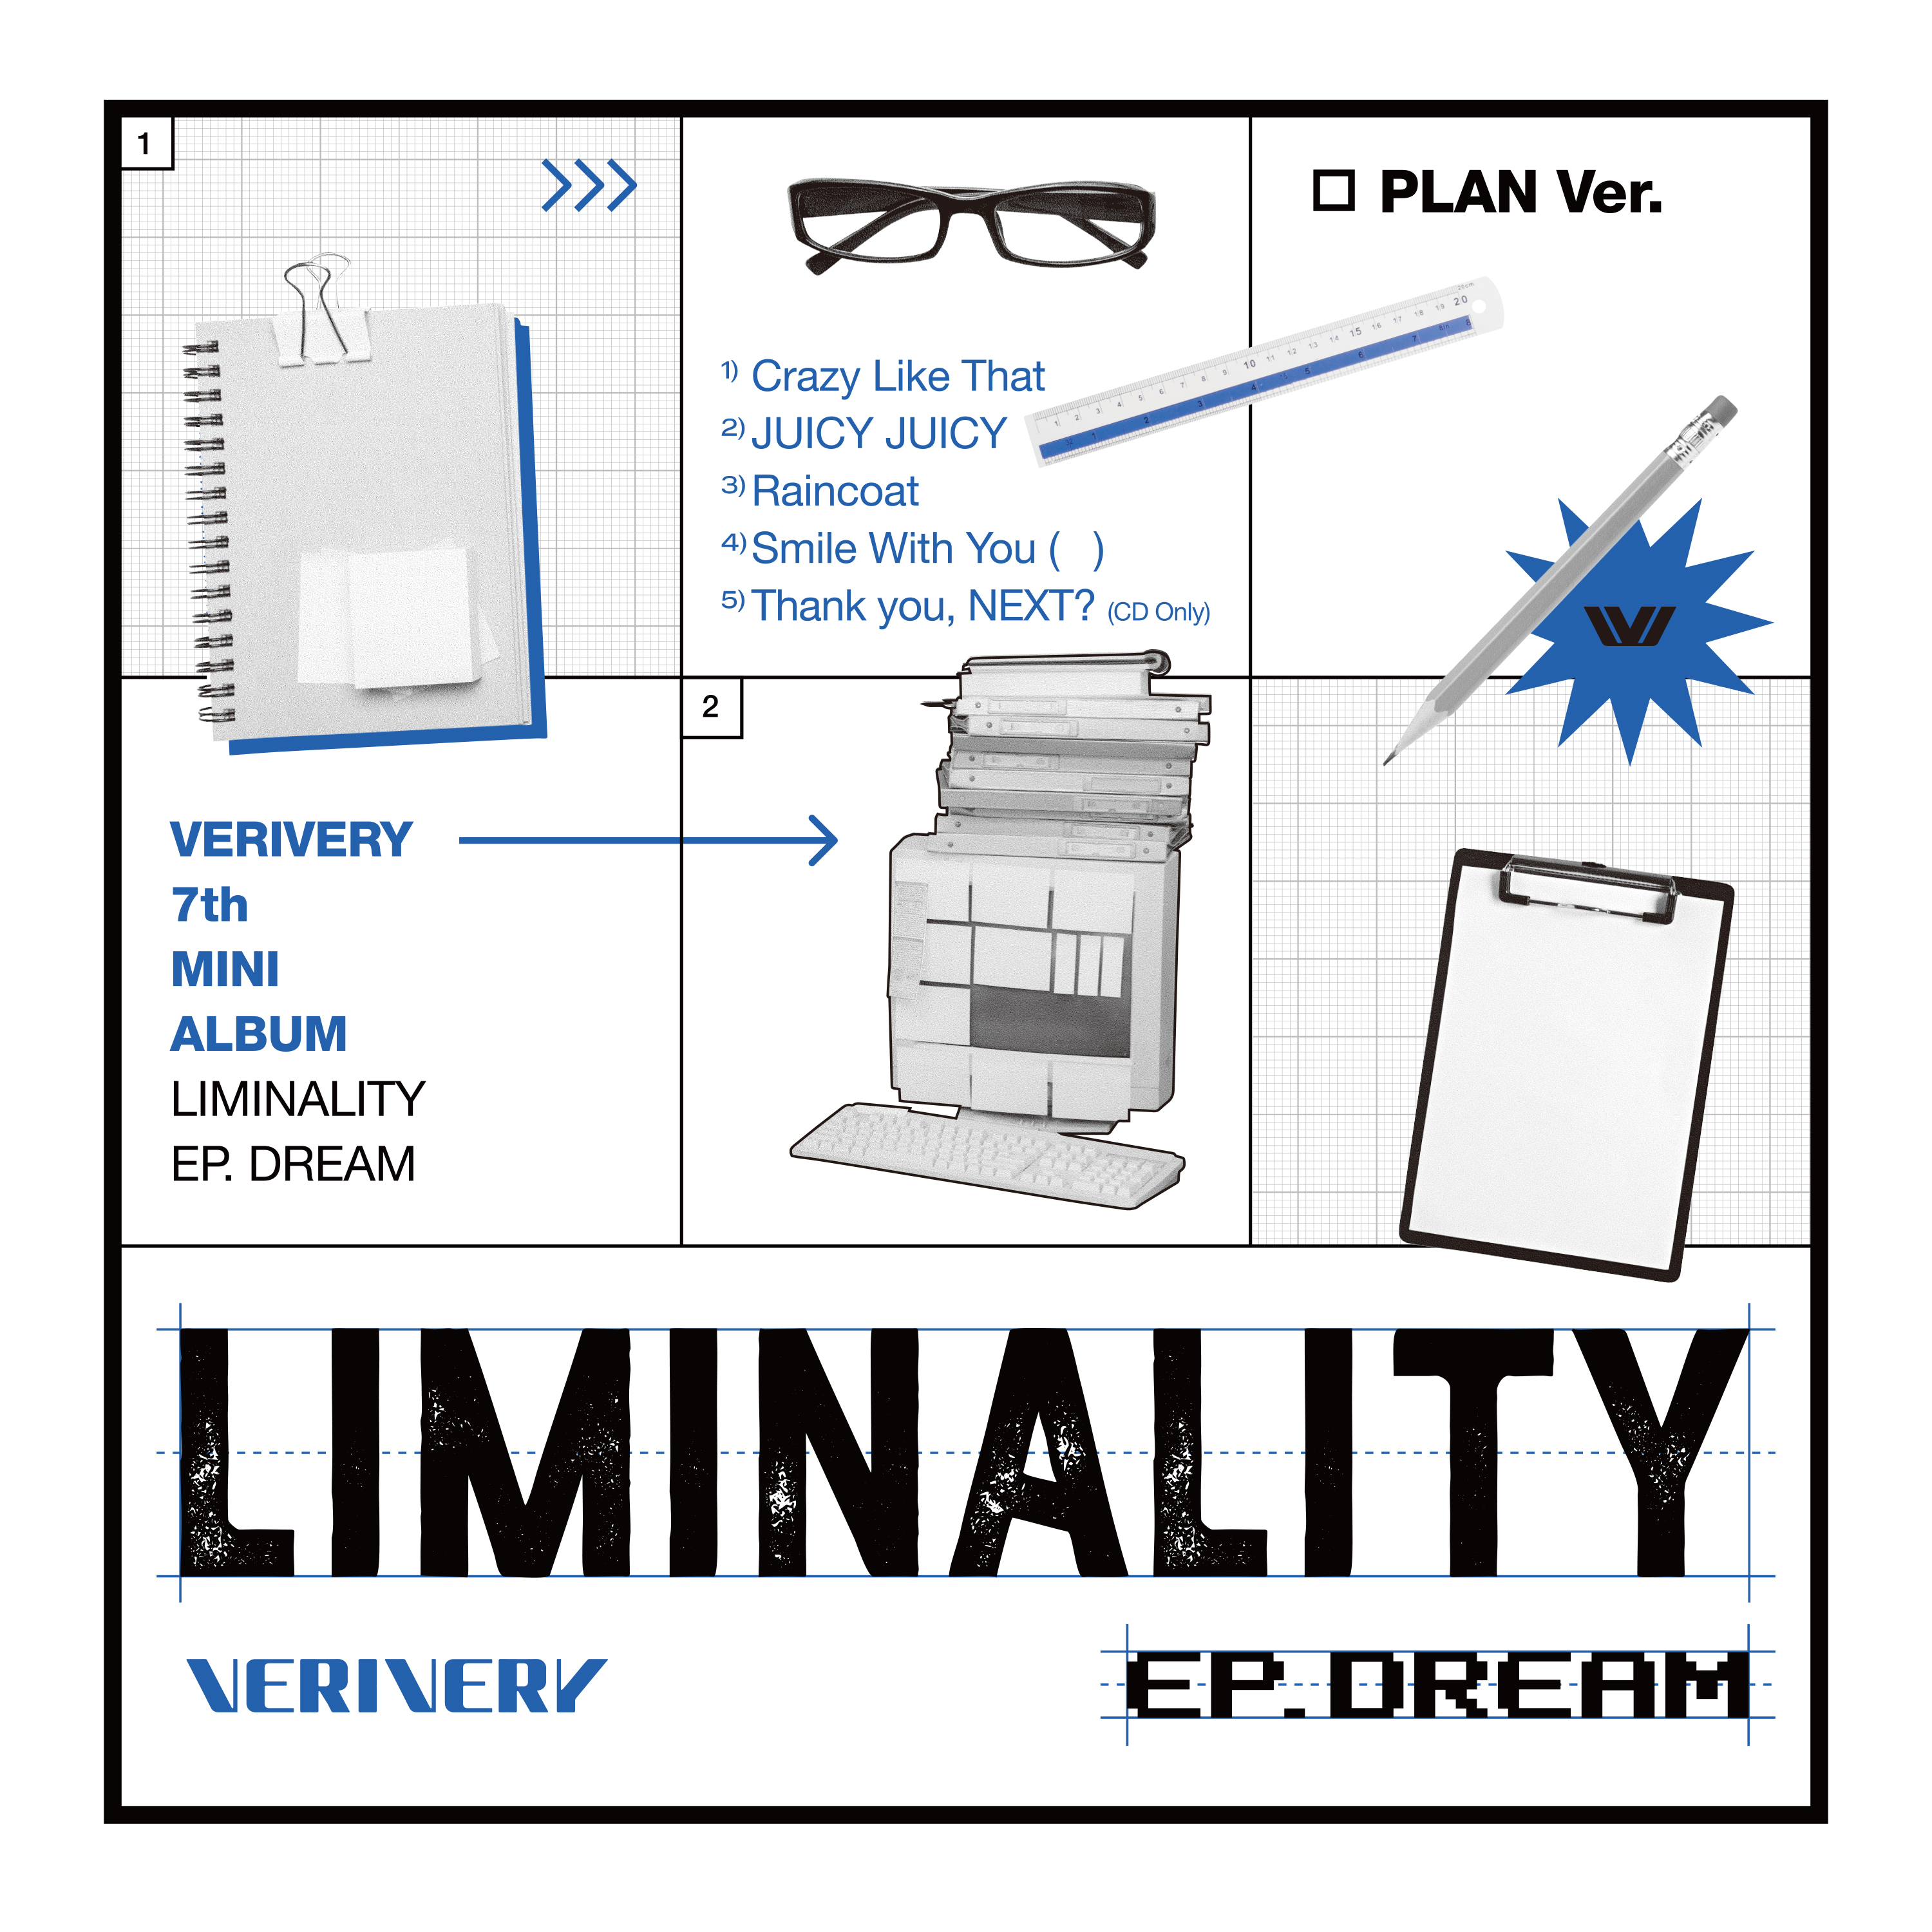 베리베리(VERIVERY) - 미니 7집 [Liminality - EP.DREAM] (PLAN ver.)케이팝스토어(kpop store)